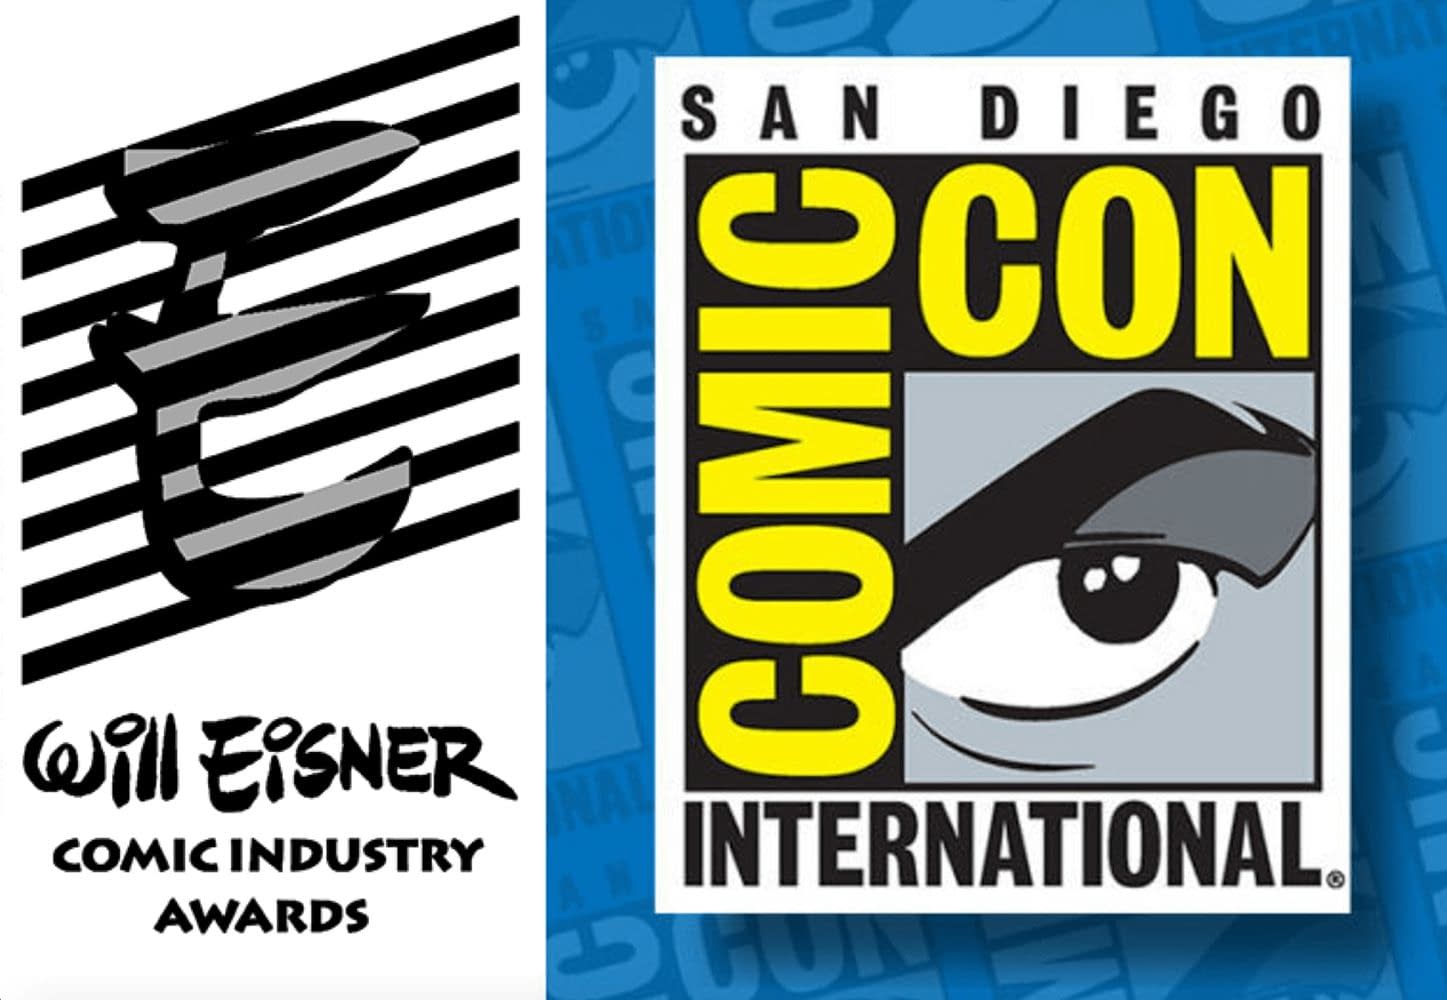 Full 2020 Eisner Award Winner List From SDCC Revealed